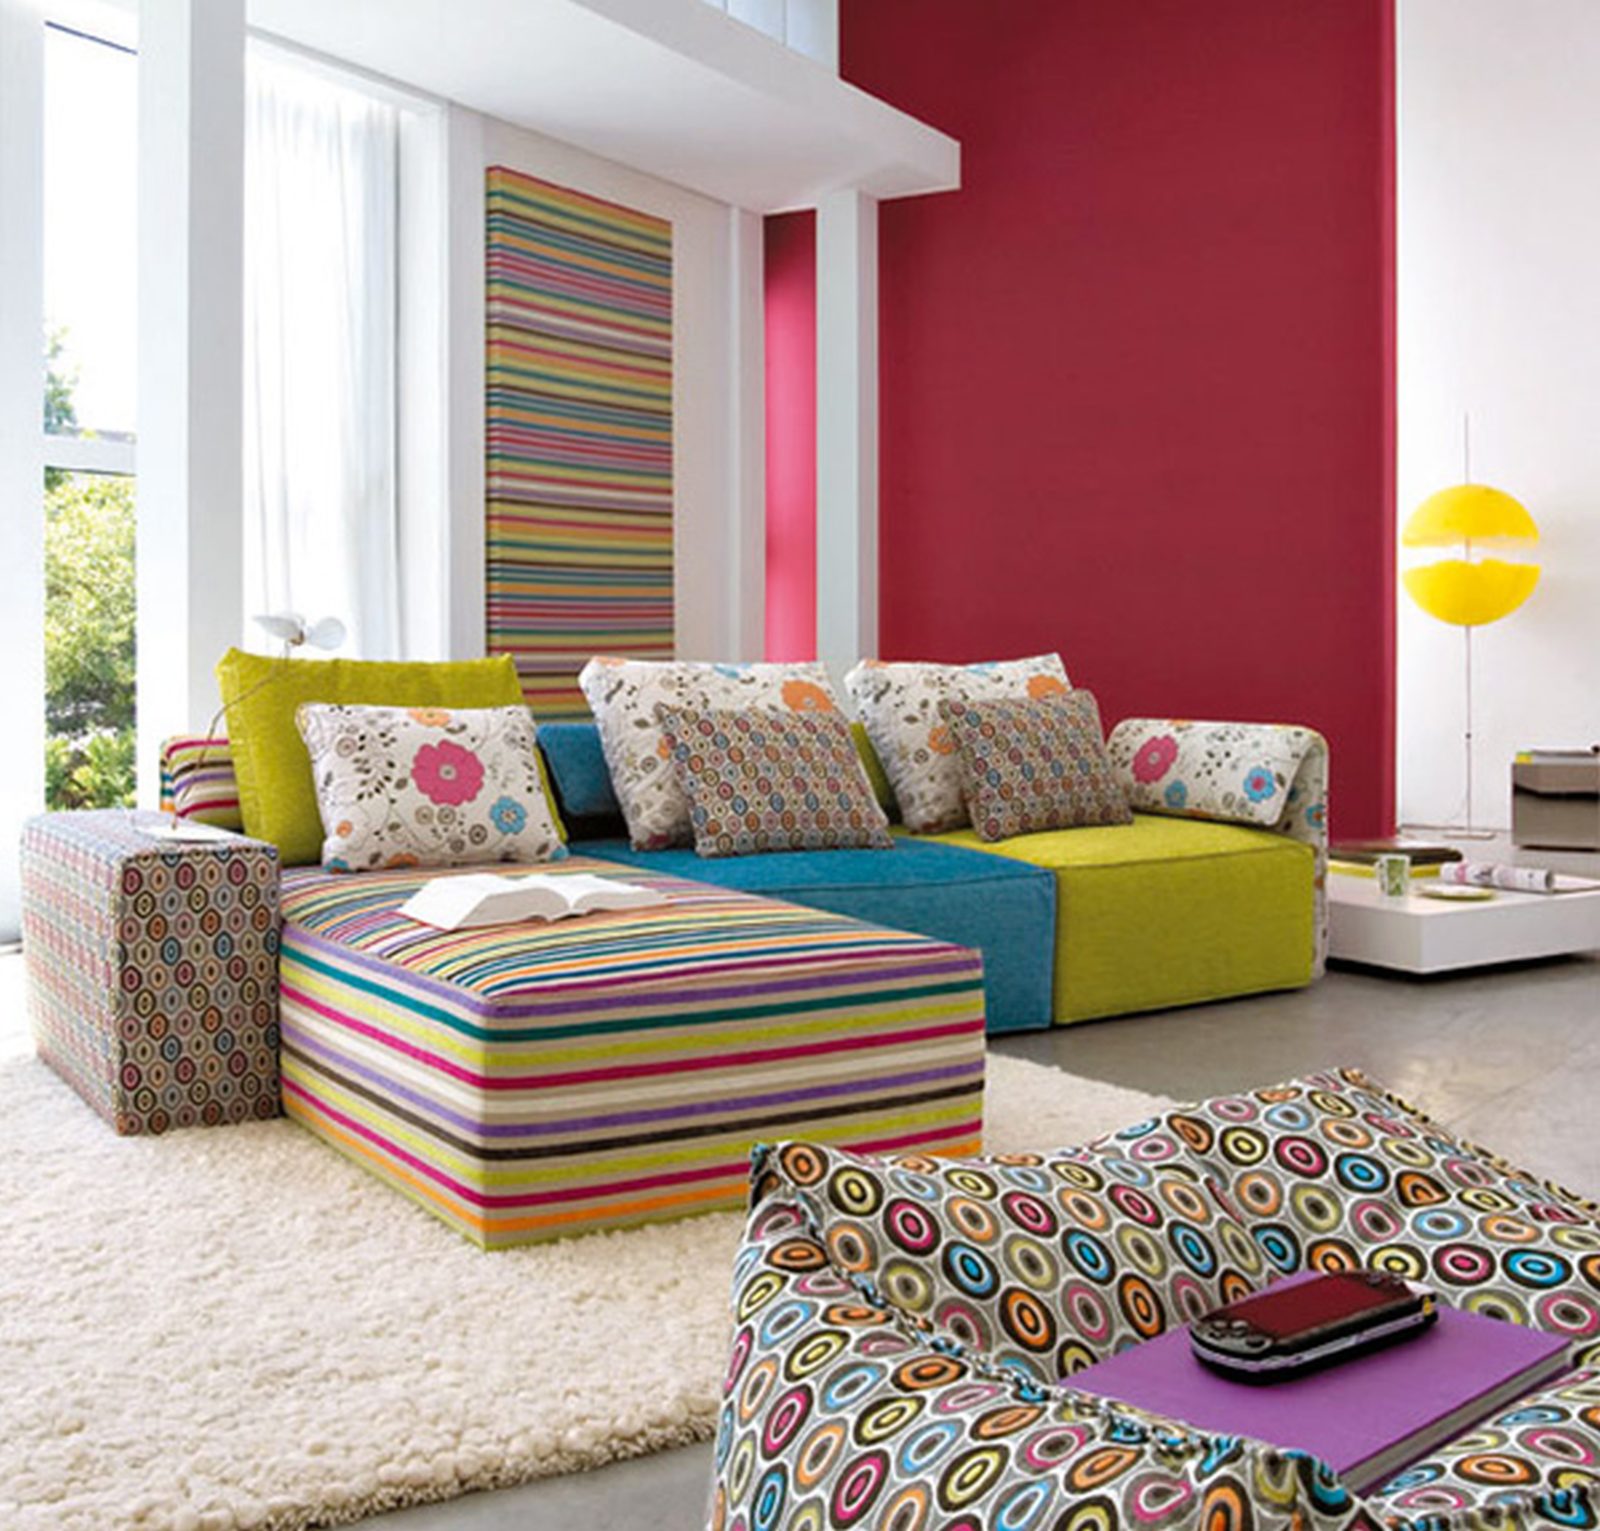 Яркий стиль интерьера. Интерьер в ярких тонах. Разноцветный диван в интерьере. Яркие цвета в интерьере. Яркая гостиная.